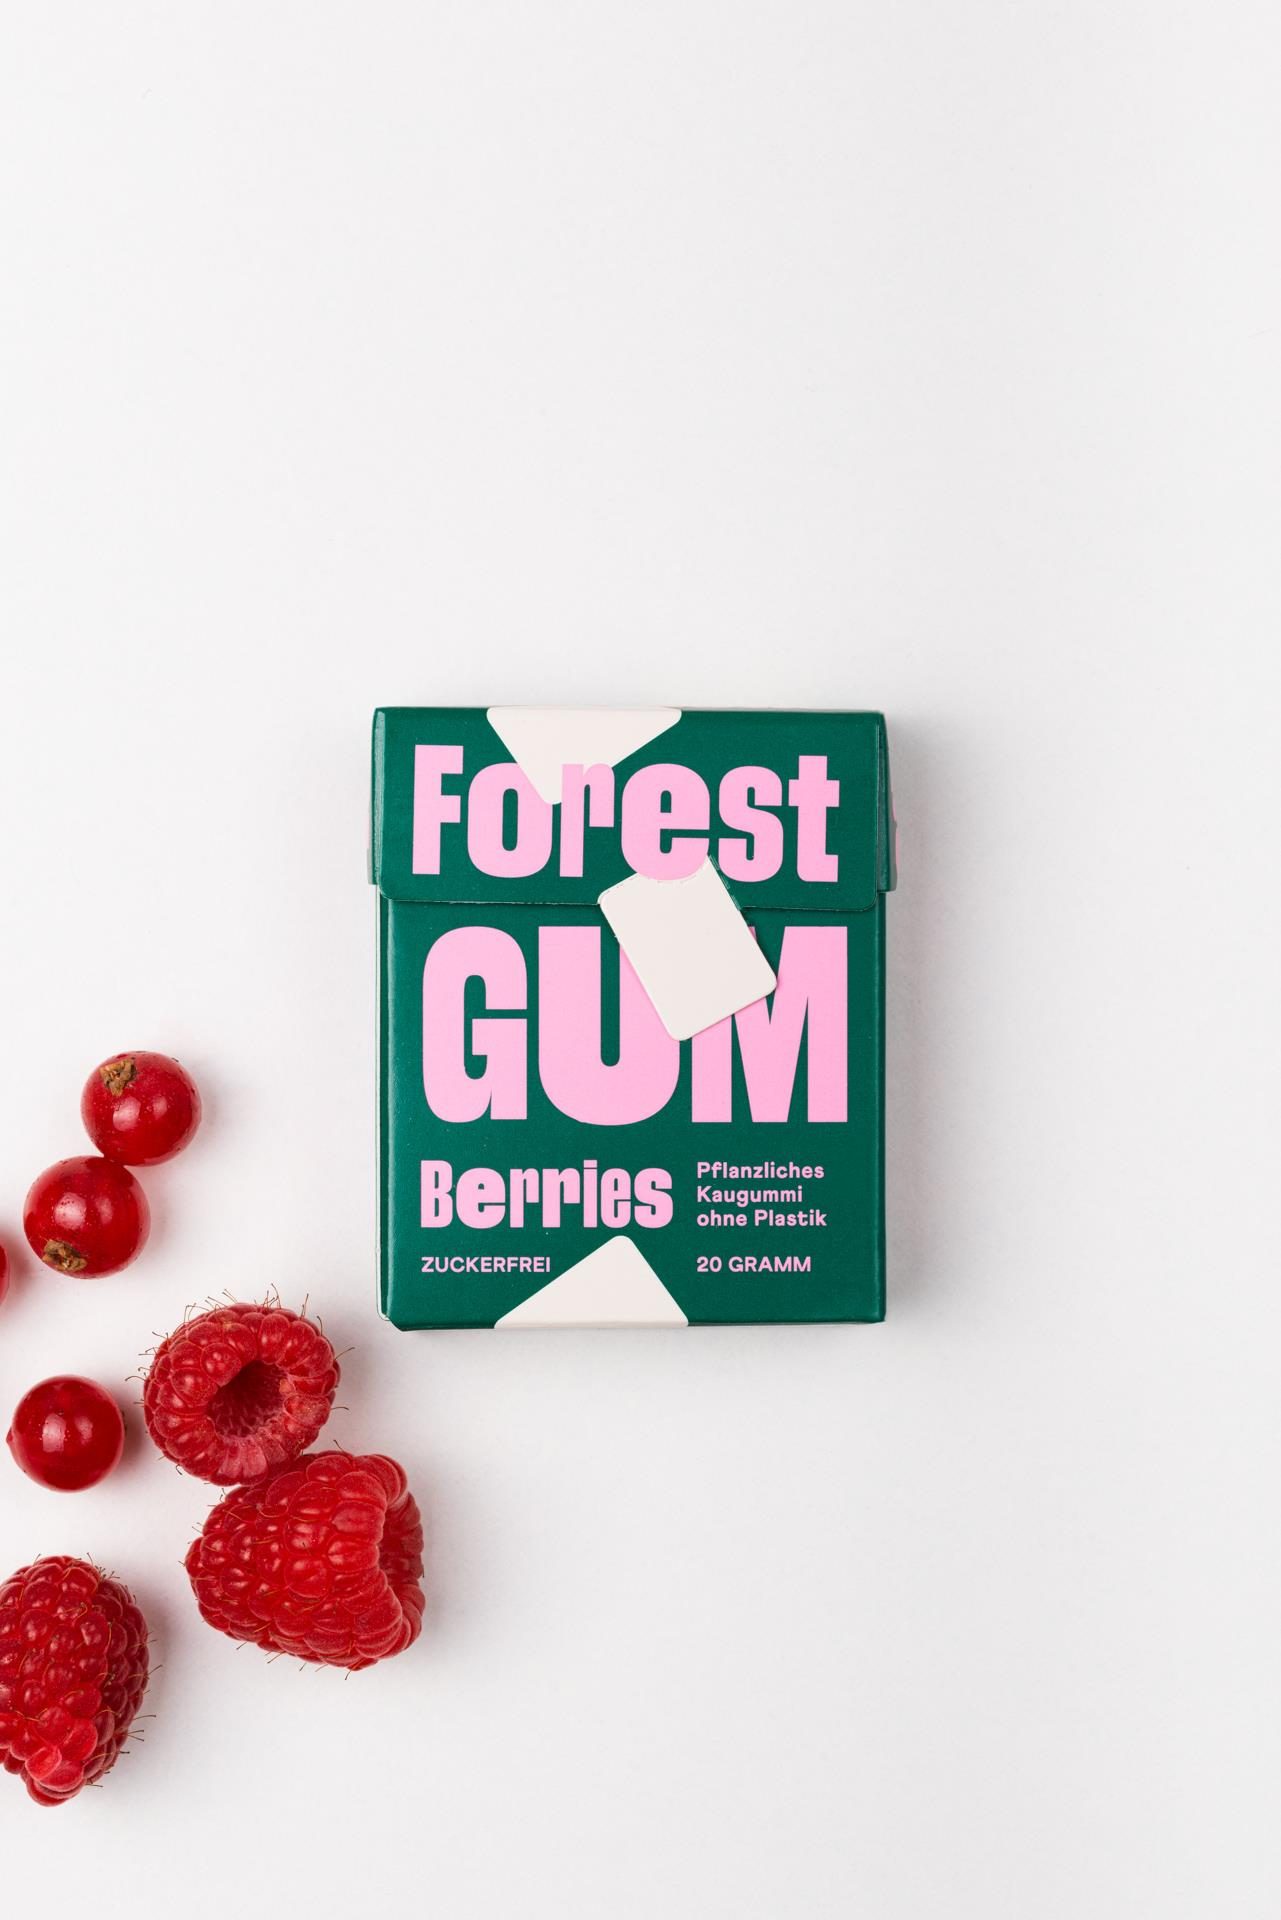 Forest Gum Berries - Forest Gum Produktbild 1